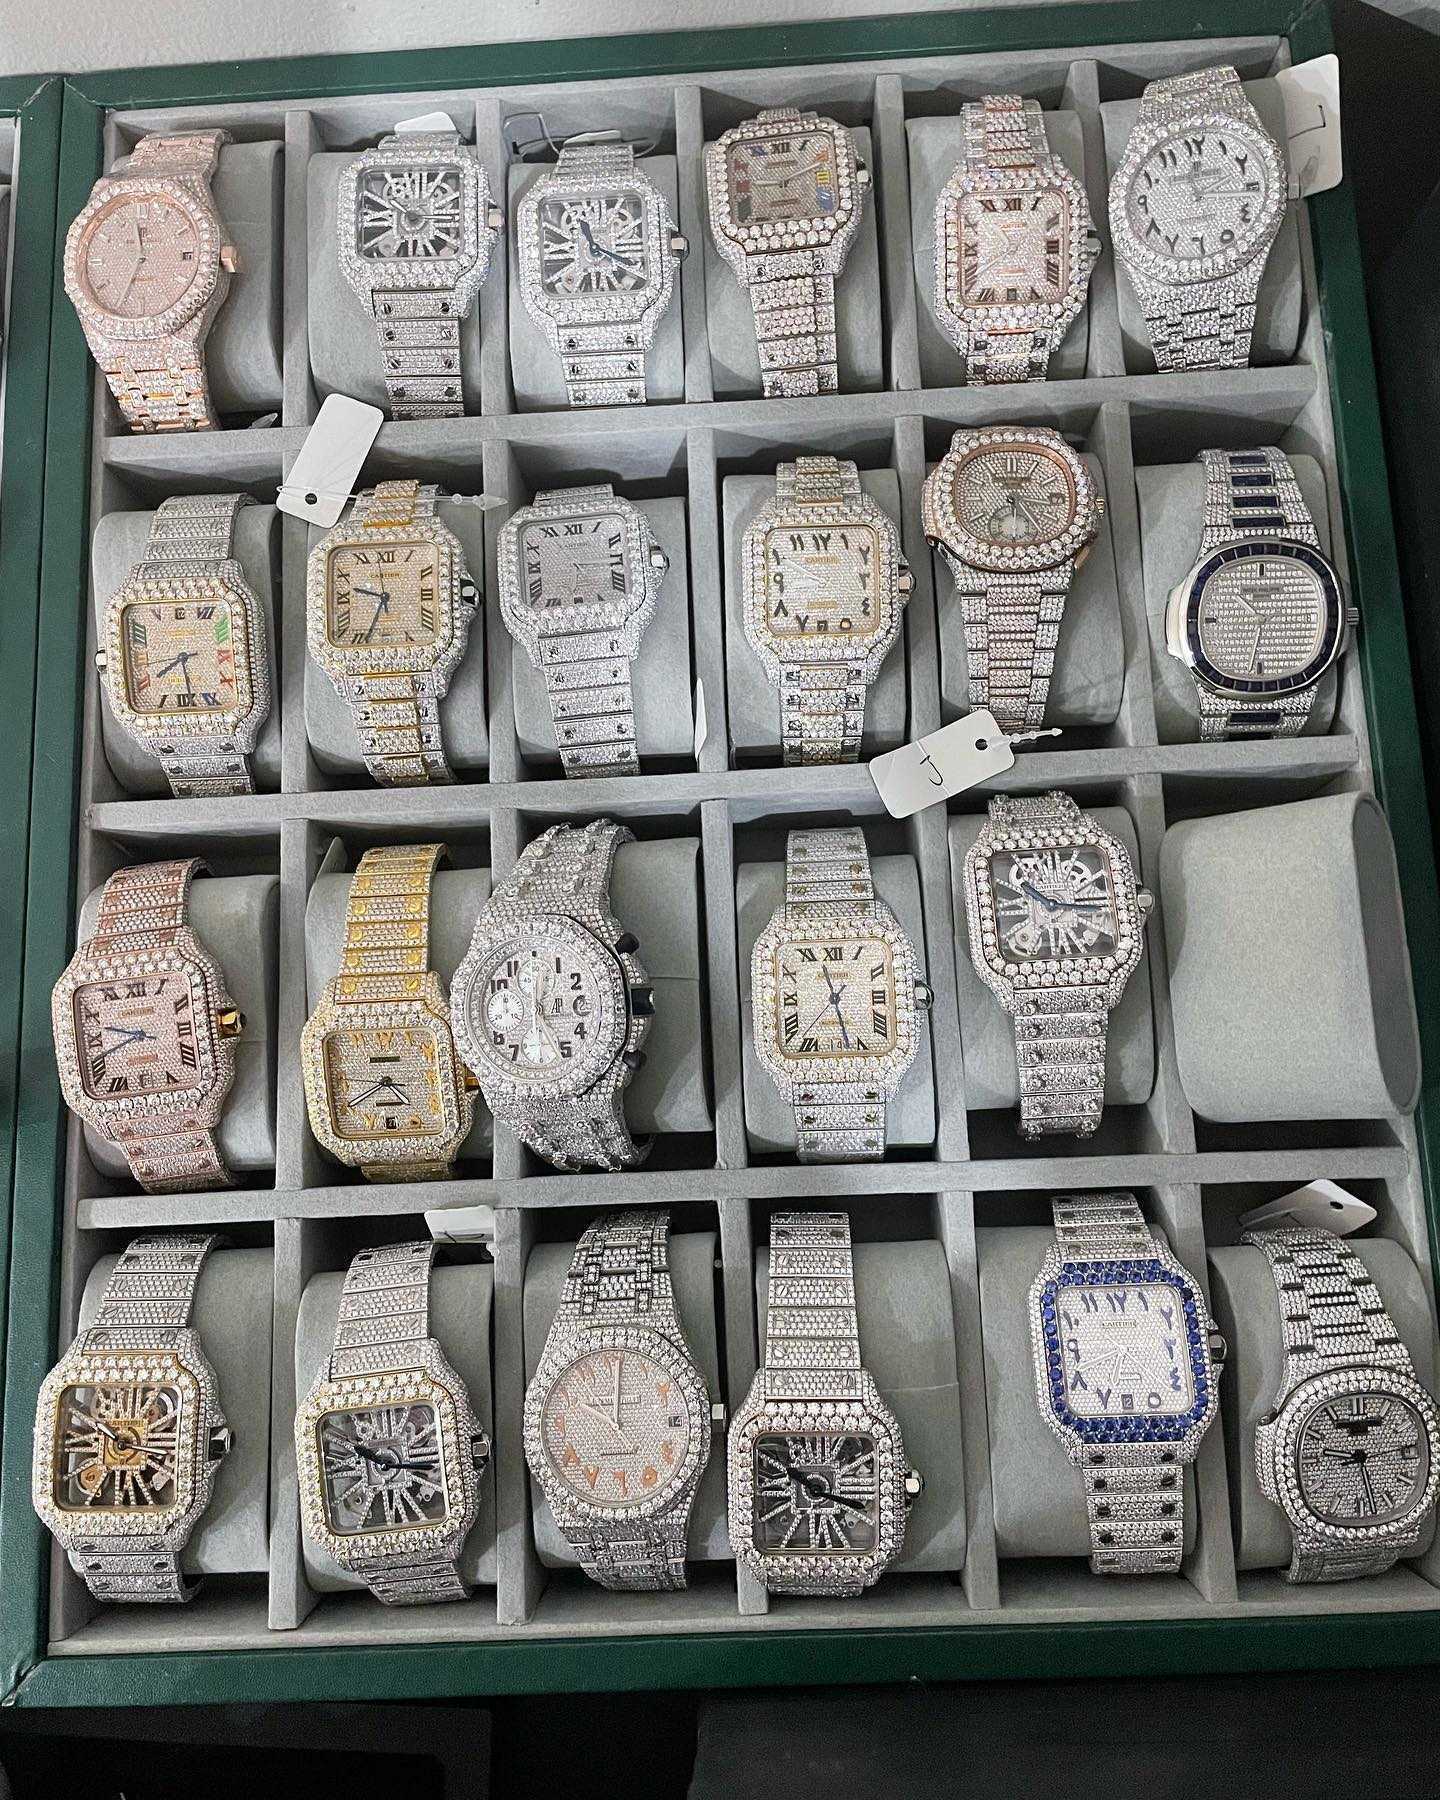 Horloges D31 Luxe herenhorloge 4130 uurwerk horloge voor heren 3255 montre de luxe Mosang steen ijs VVS1 GIA horloge Diamond watchs304r